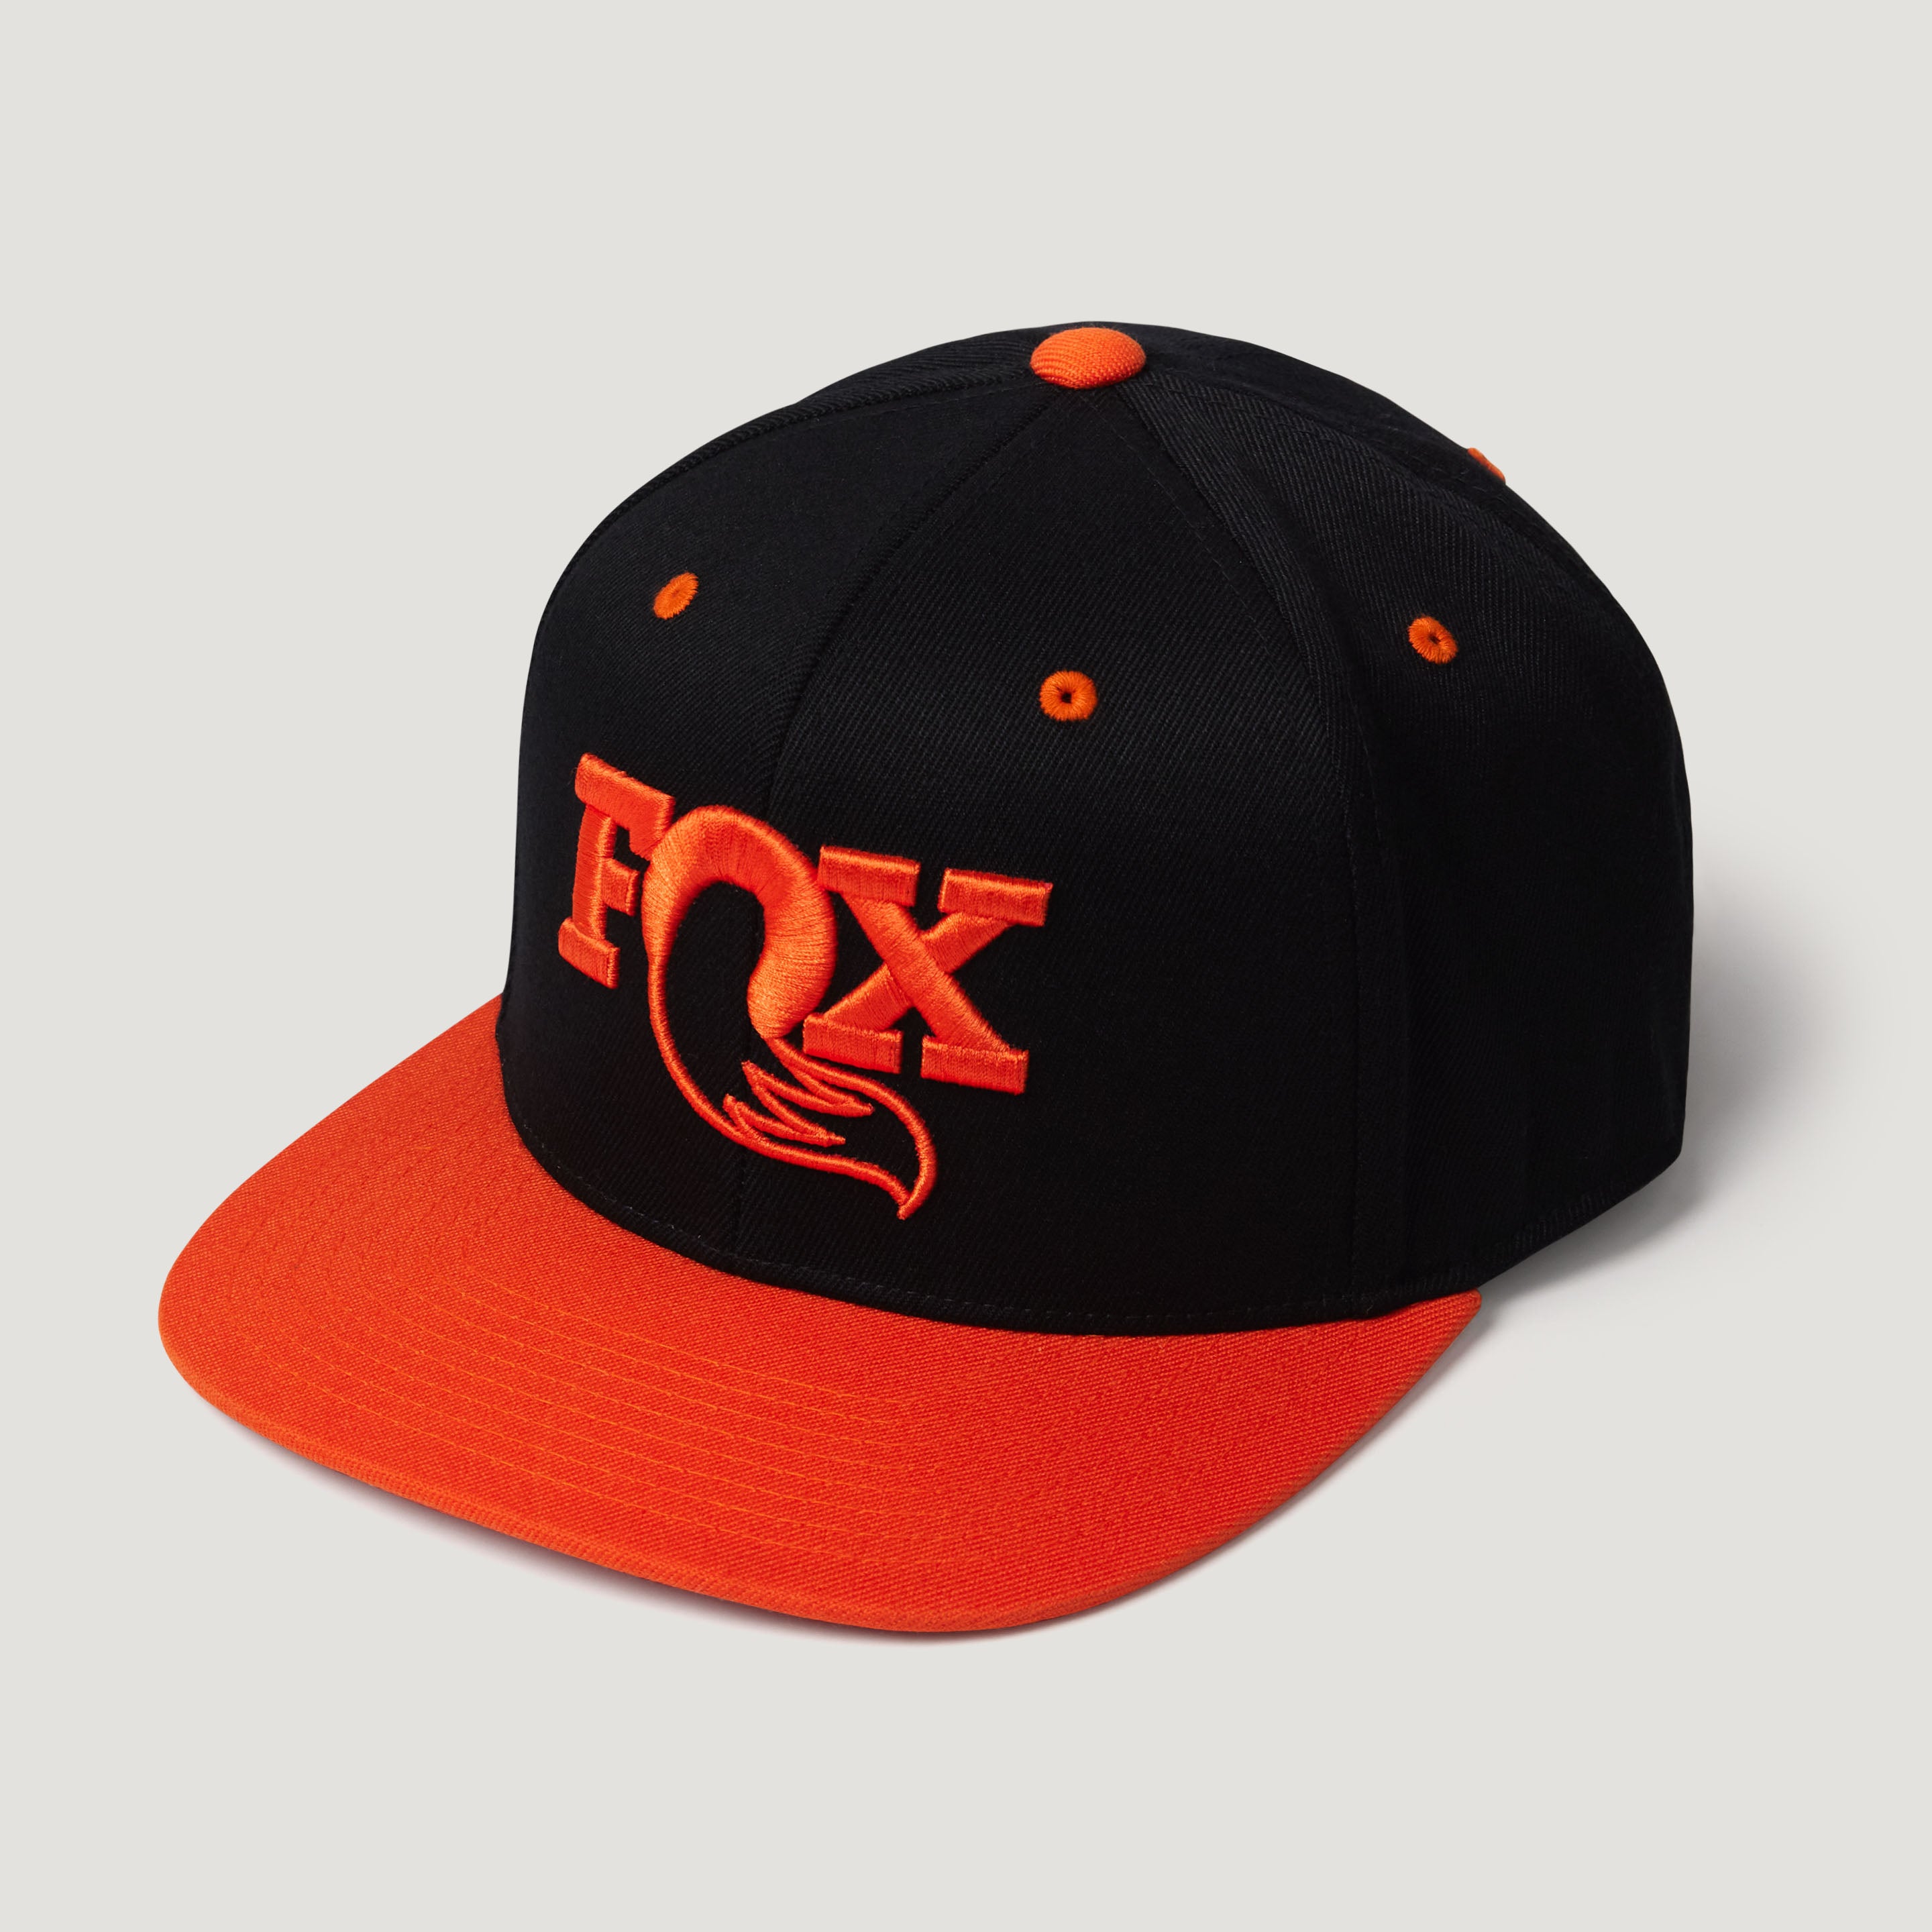 Hats | The FOX Shop – The FOX Shop CA